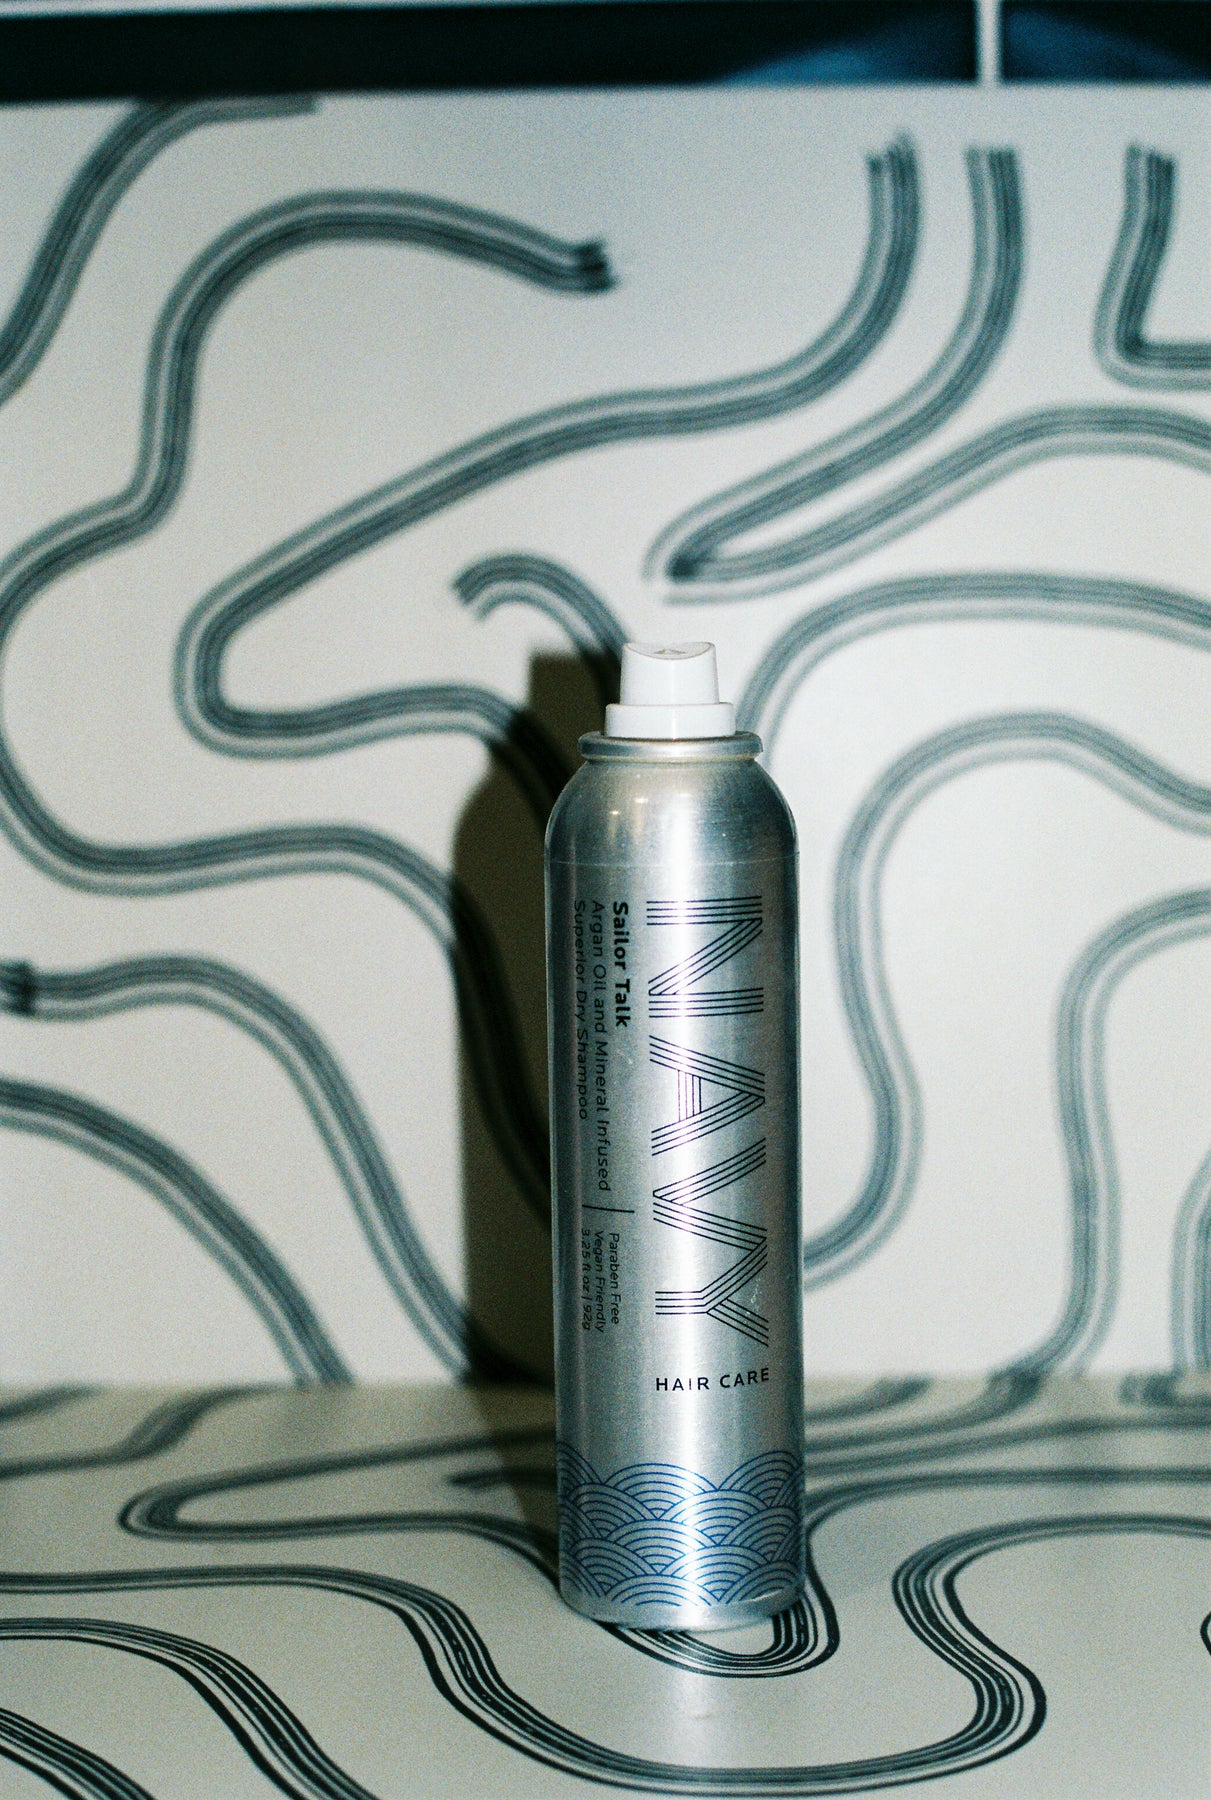 Navy Hair Care Pebble Beach - Dry Texture Spray 7 oz